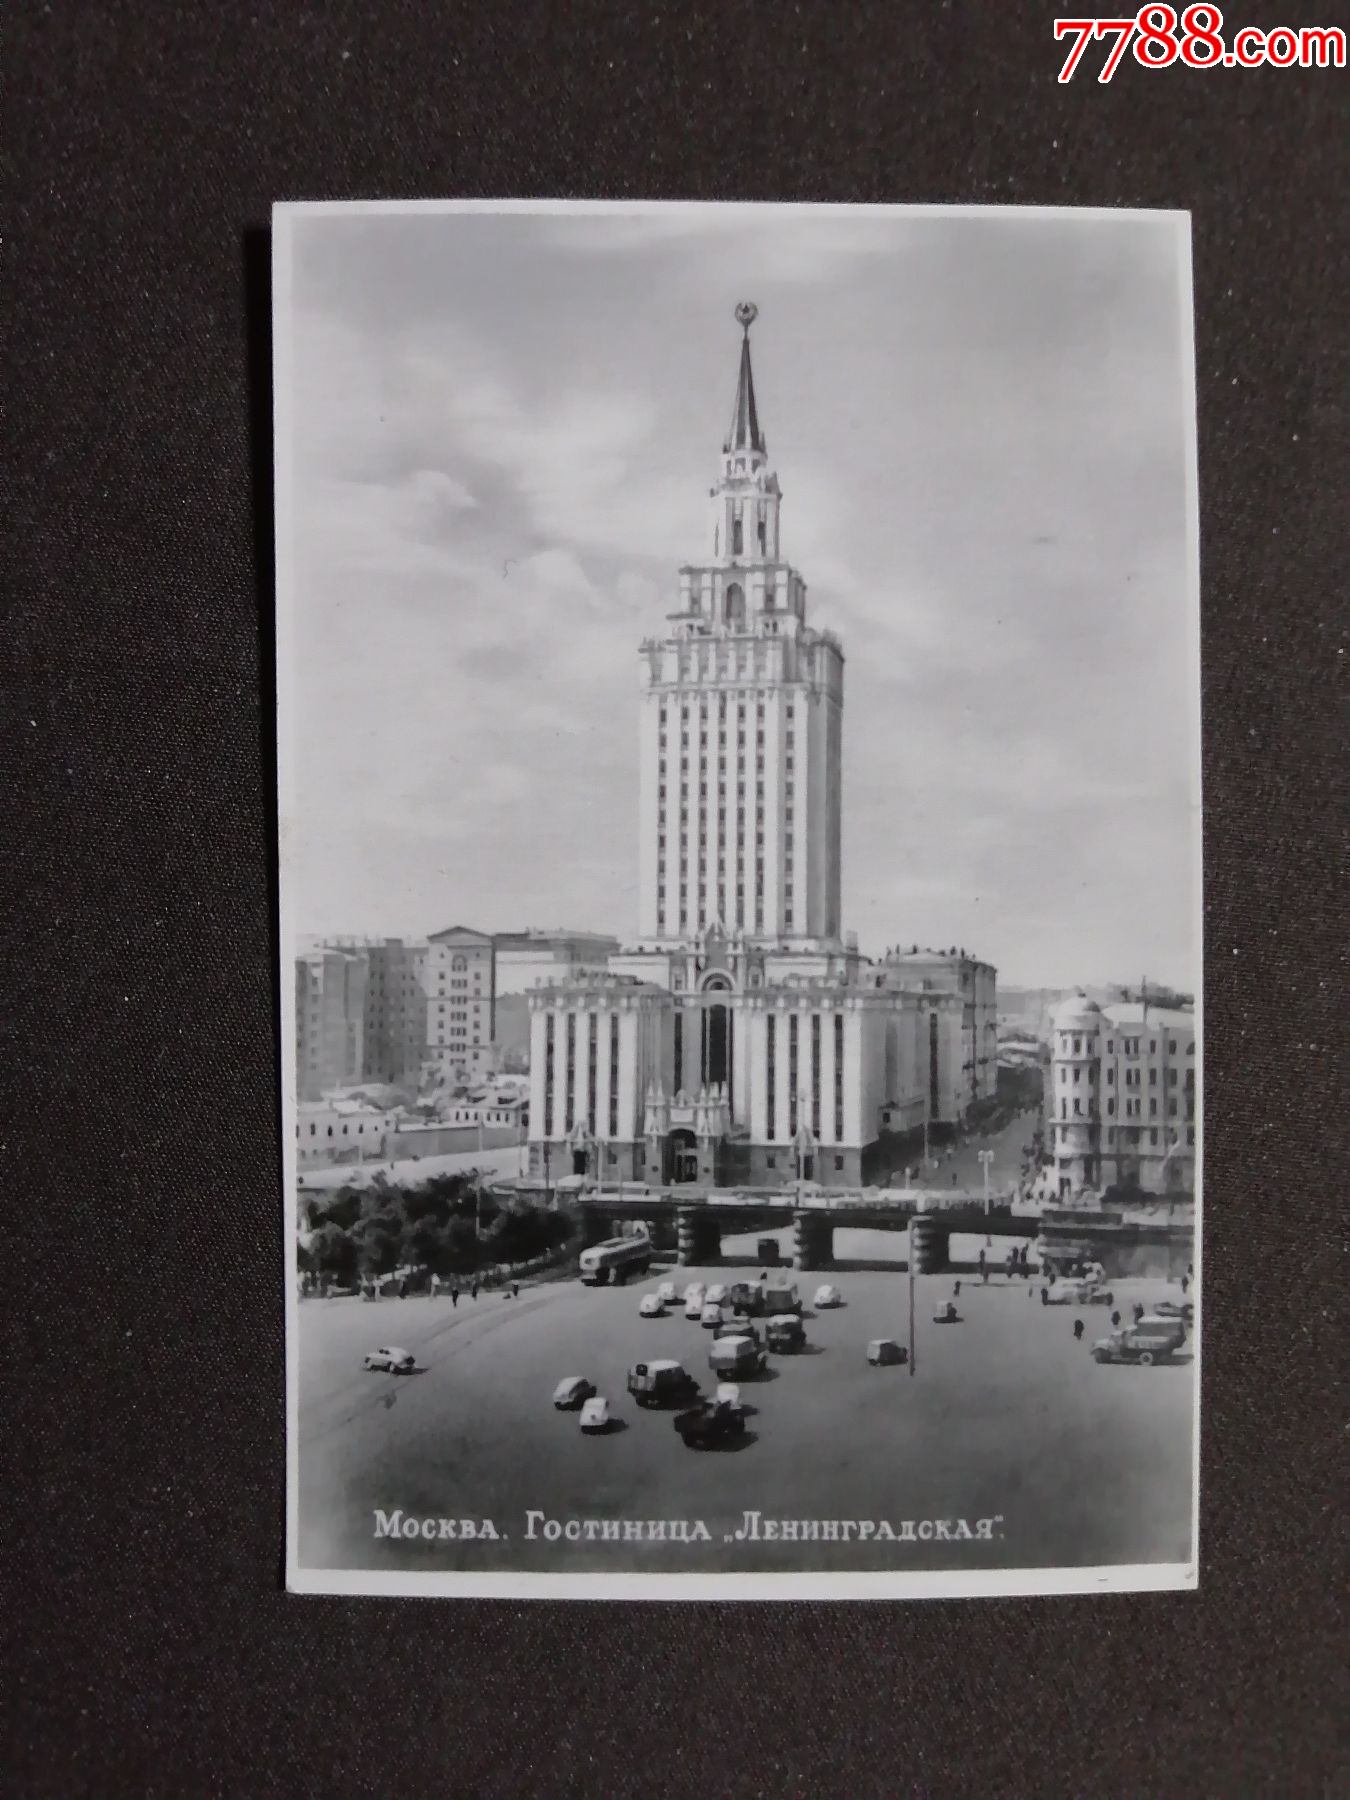 前苏联莫斯科历史建筑及四十年代末斯大林风格七姐妹建筑